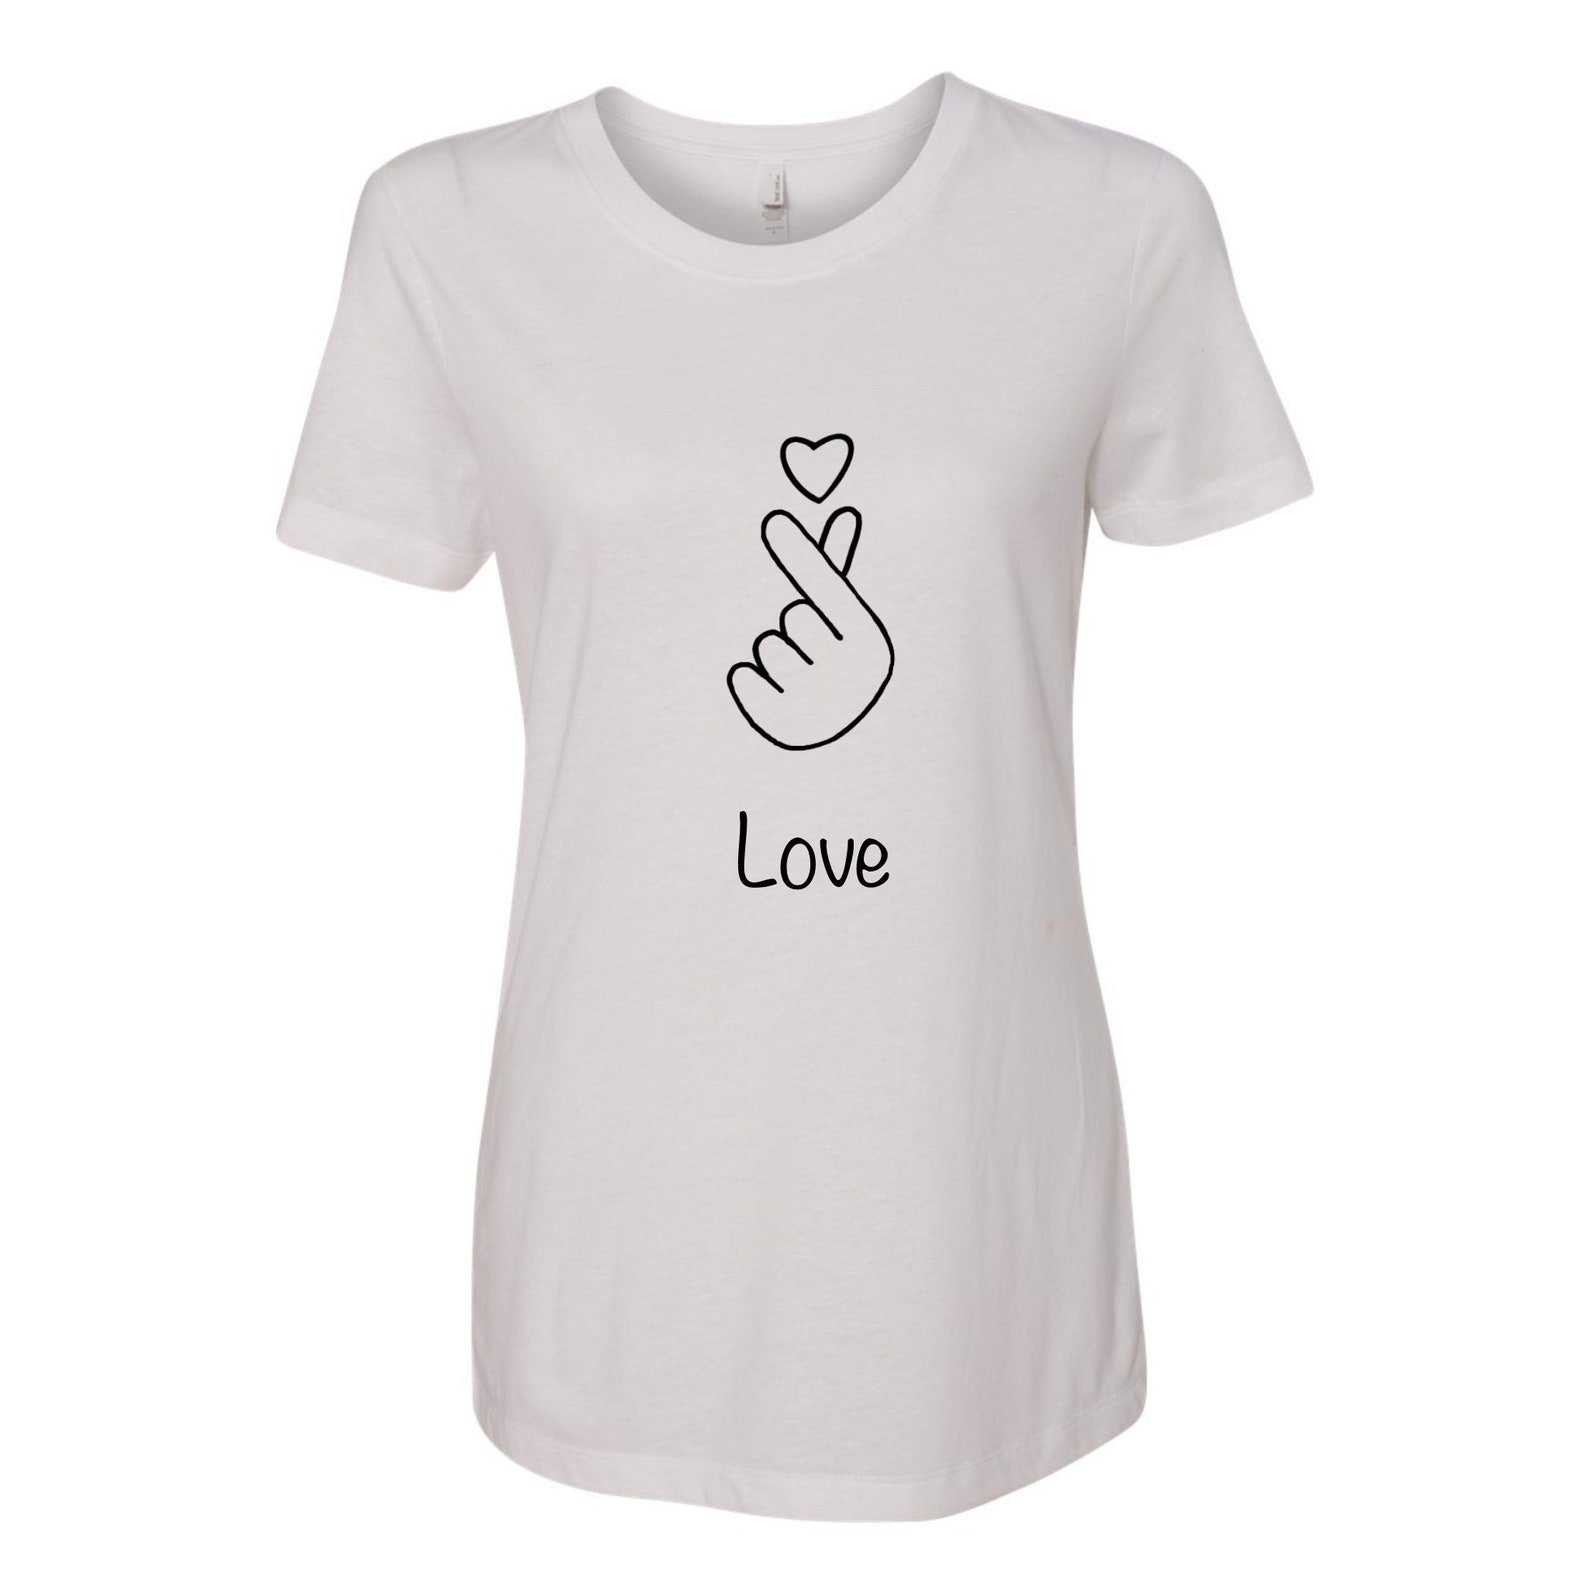 Kpop T-shirt/ Women T-shirt/ Women Shirt/ Korean Finger Heart | Etsy